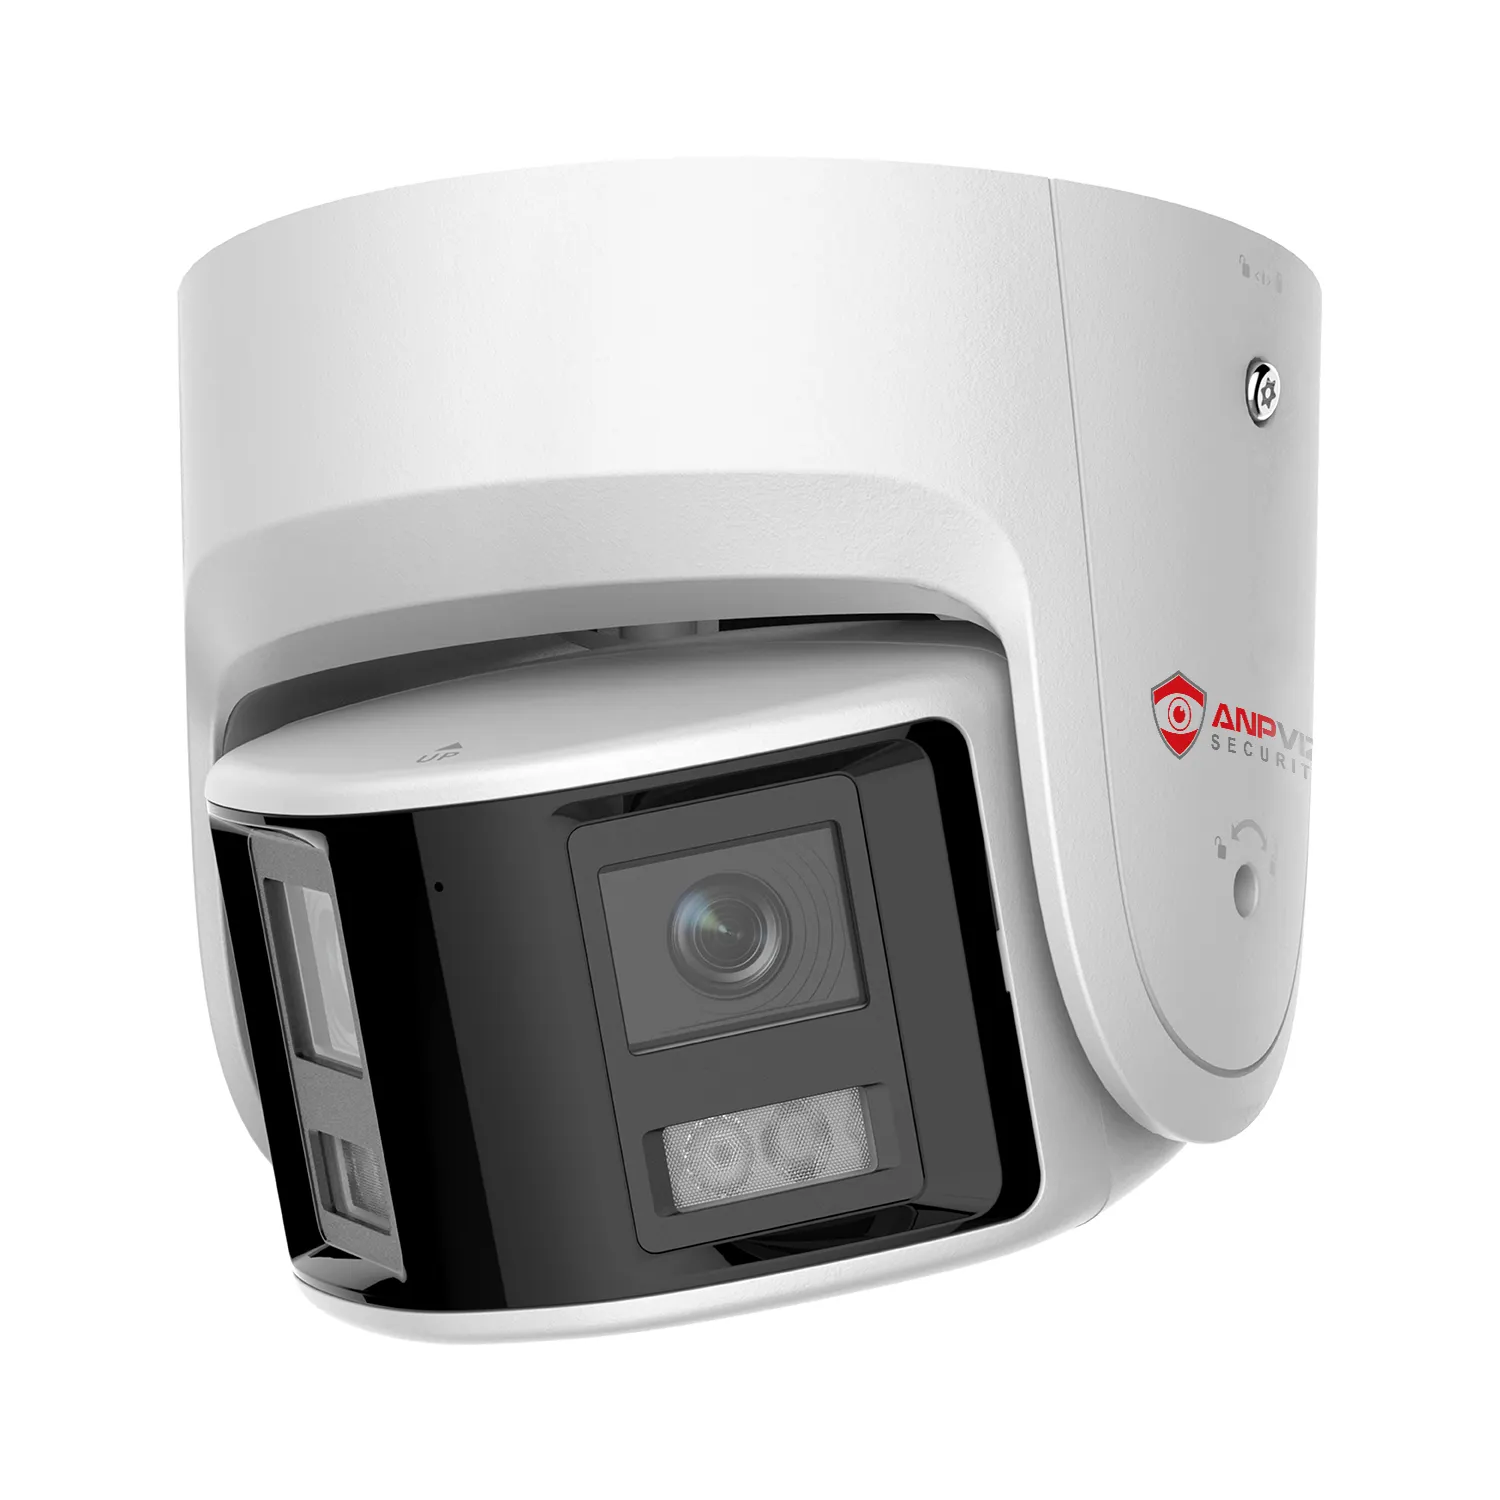 ANPVIZ POE IP-Kamera CCTV 6MP Panorama kamera mit zwei Objektiven 180-Grad-Bild Erkennung von Menschen/Fahrzeugen Ton-und Blitz alarm 2-Wege-Gespräch